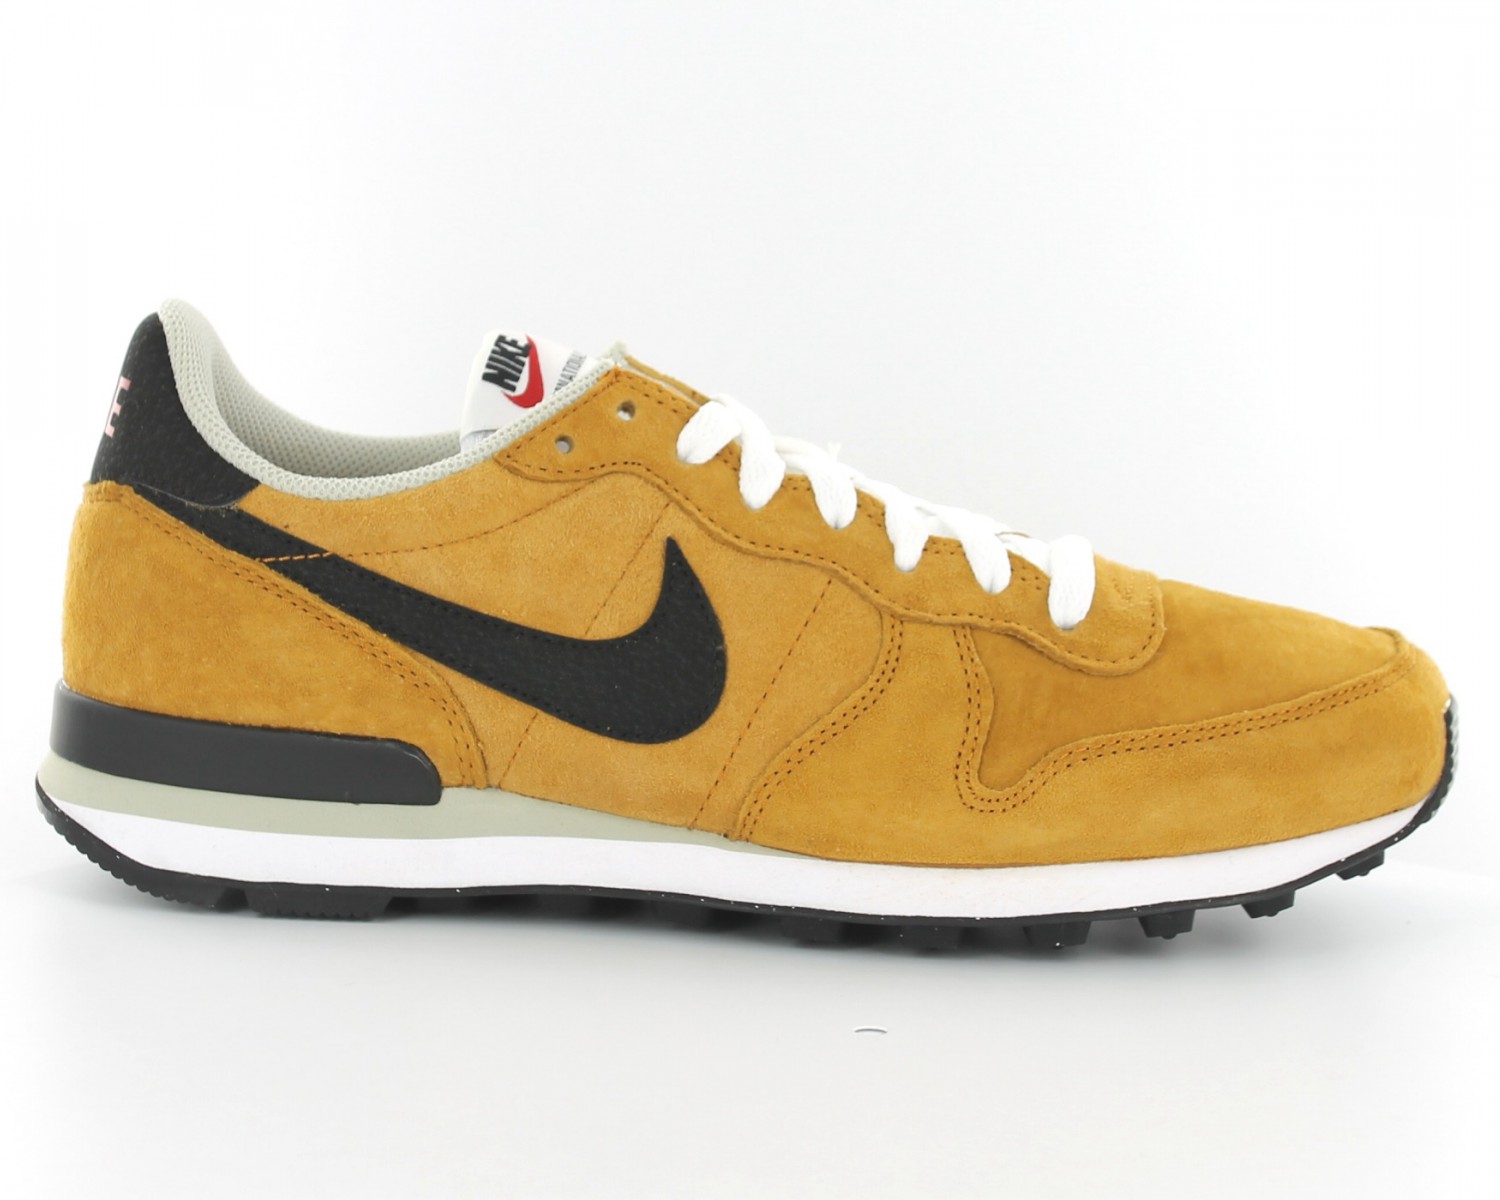 Nike Internationalist cuir beige BEIGE/NOIR 631755-700